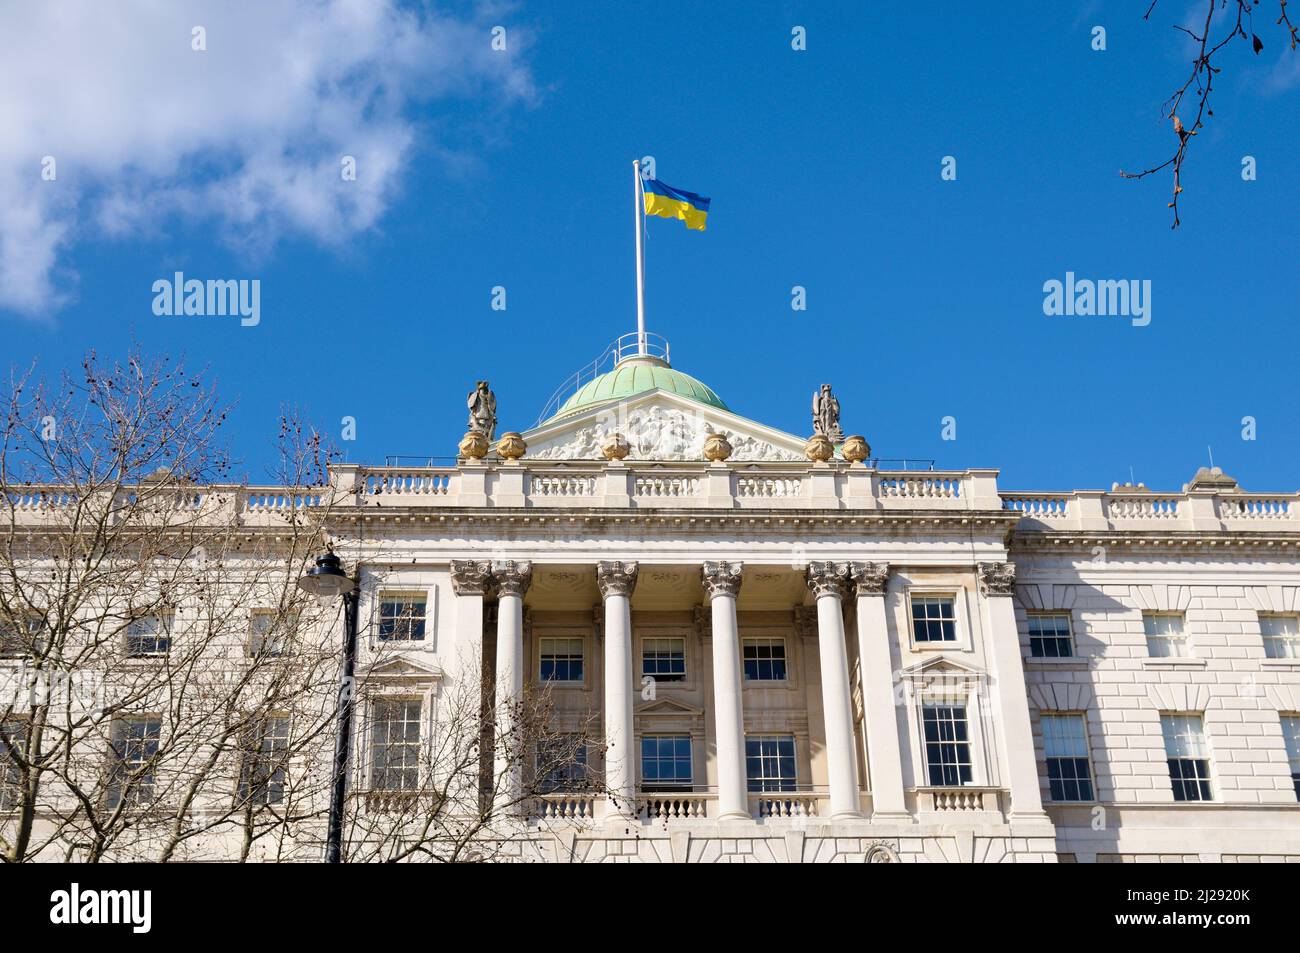 Bandiera Ucraina che vola alla Somerset House per mostrare solidarietà e sostegno al paese e alla popolazione dell'Ucraina in seguito all'invasione russa. Londra Regno Unito Foto Stock